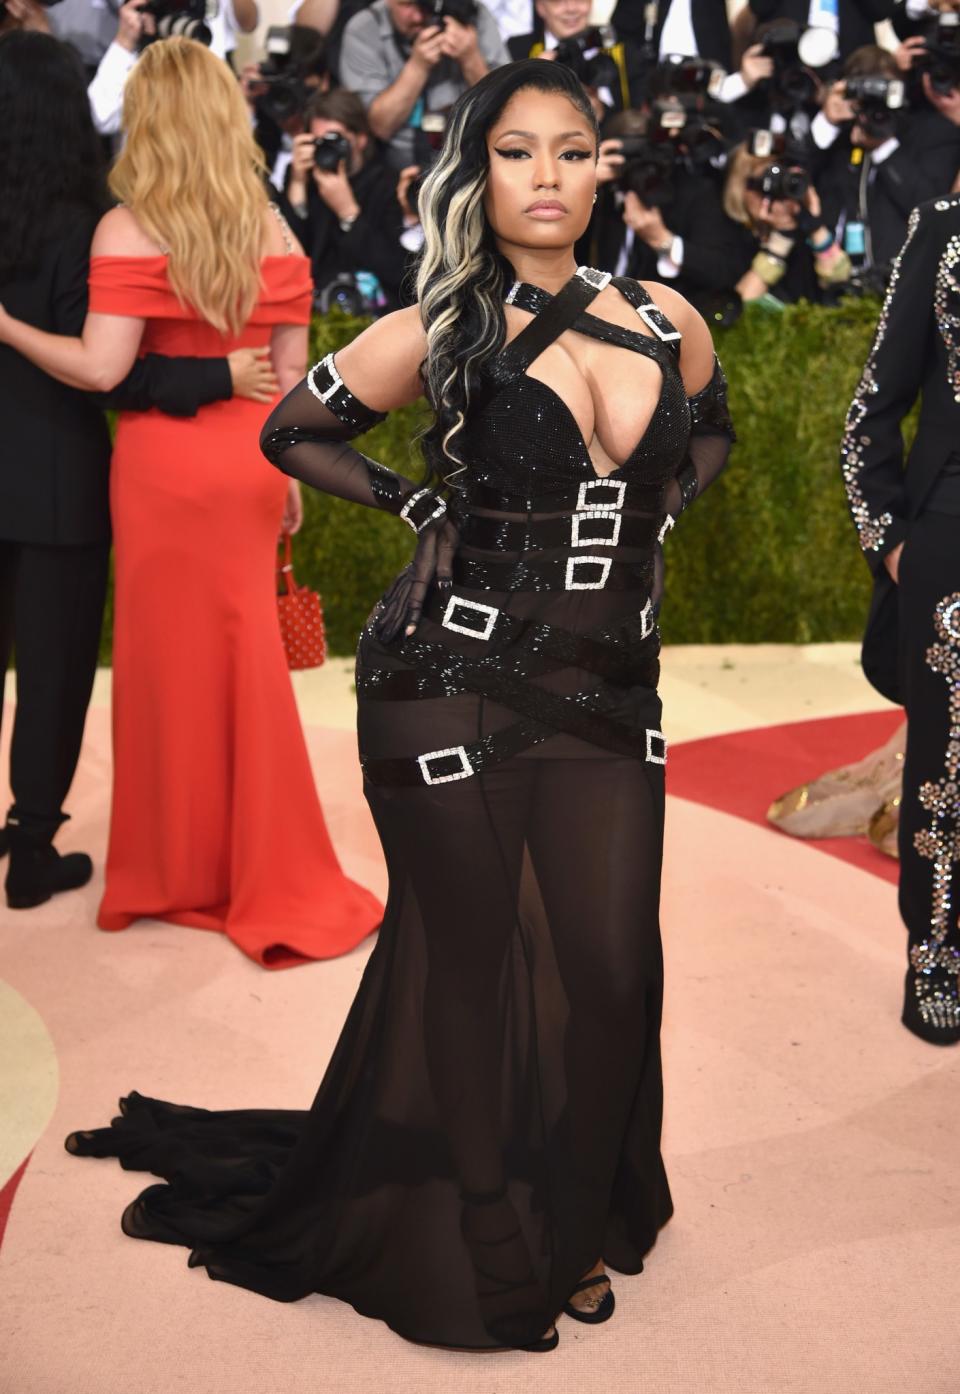 WORST: Nicki Minaj at the Met Gala